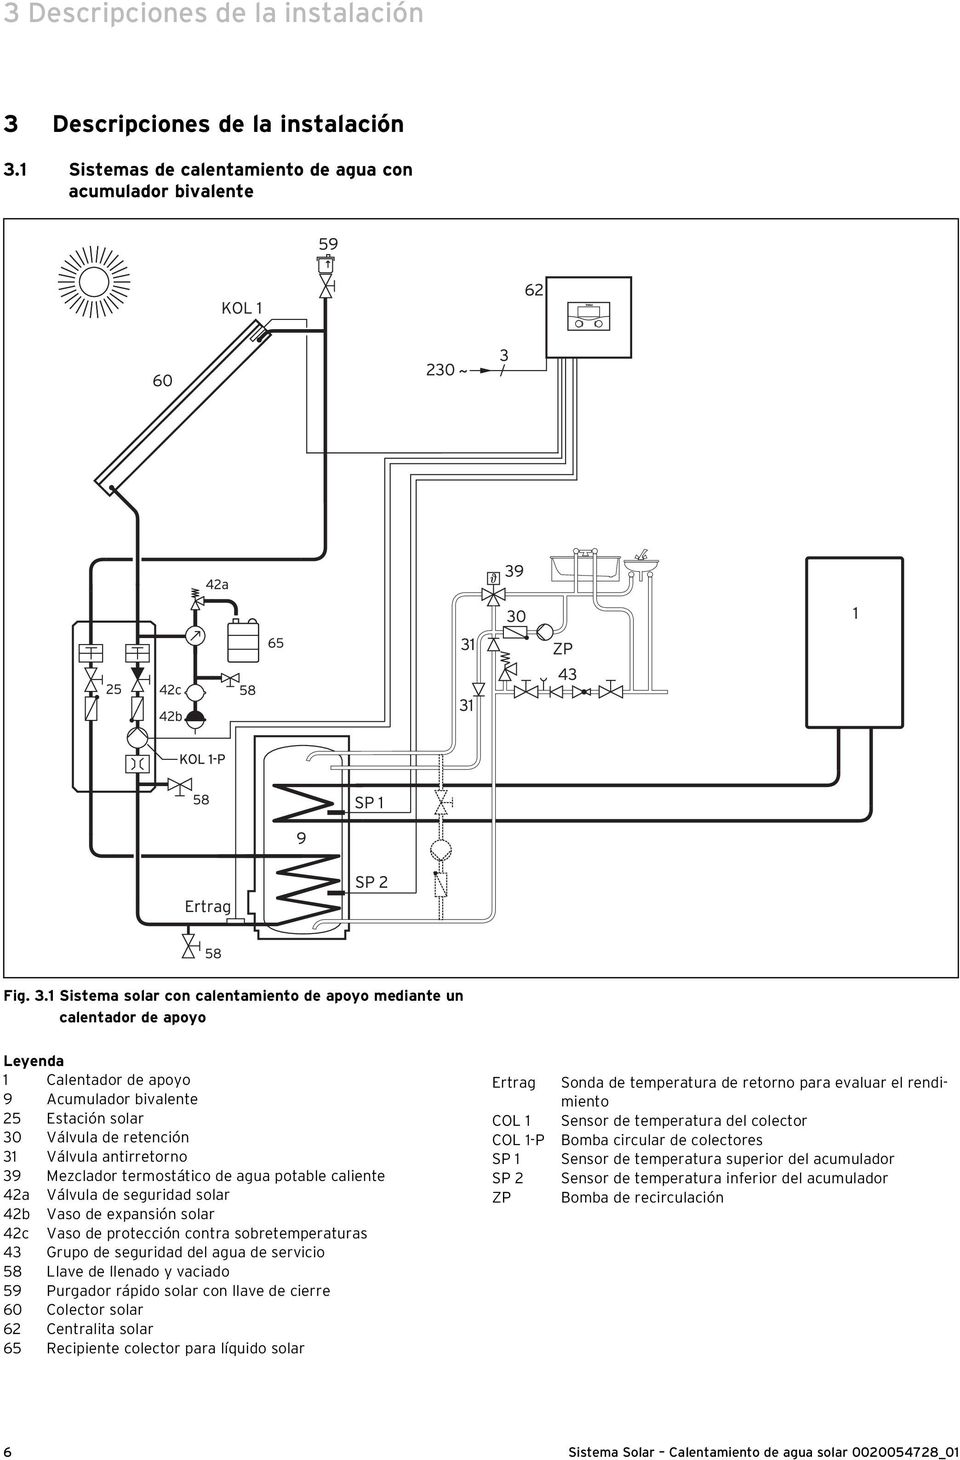 1 Sistemas de calentamiento de agua con acumulador bivalente Fig. 3.